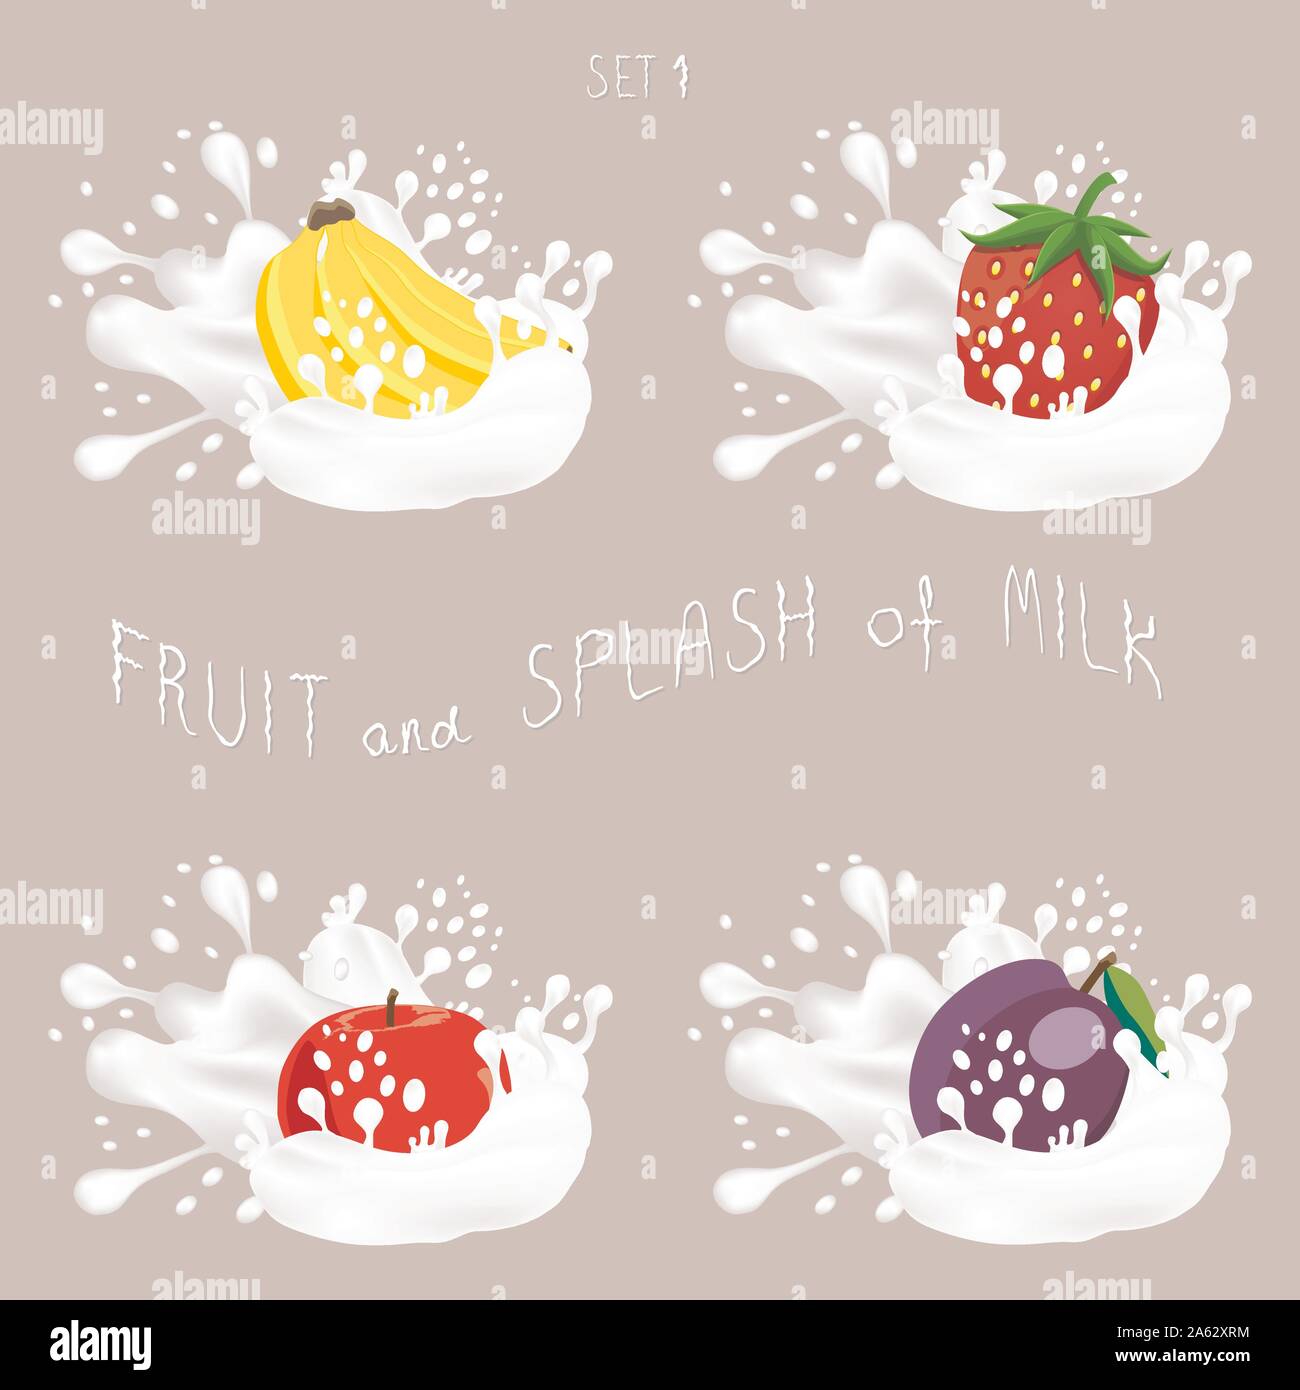 Icône vecteur illustration logo pour apple de fruits, banane, prune, fraise, splash de descente du lait blanc. Profil de prune goutte d'éclaboussures de lait de débit. Manger des fruits Illustration de Vecteur